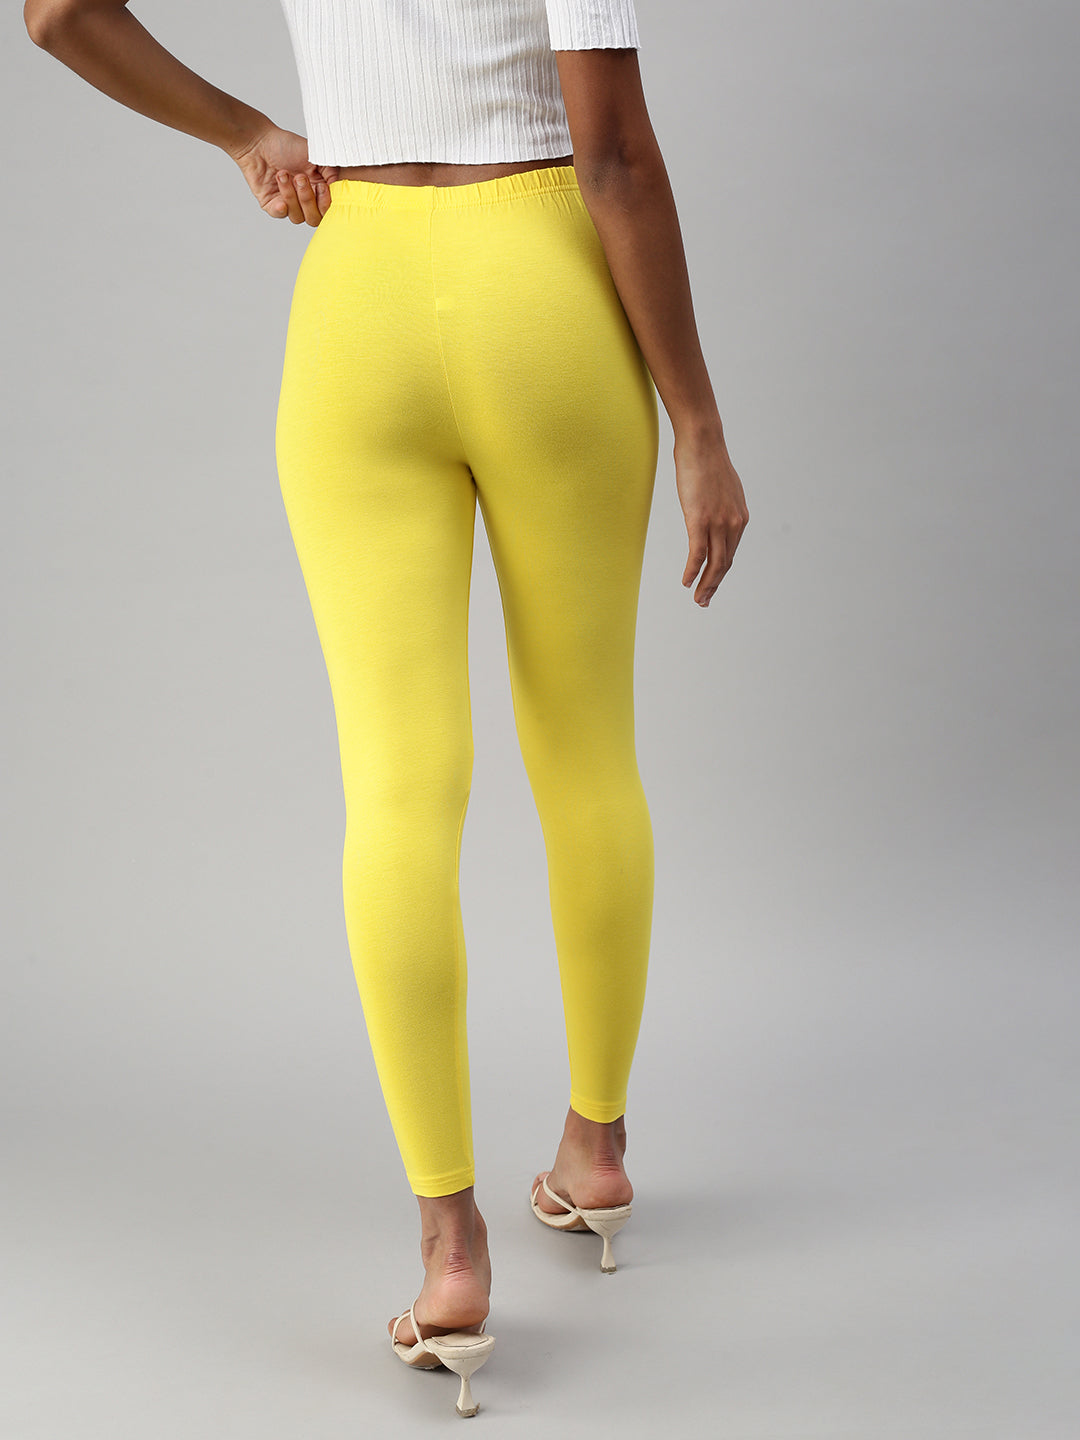 Women's Lemon Yellow Leggings